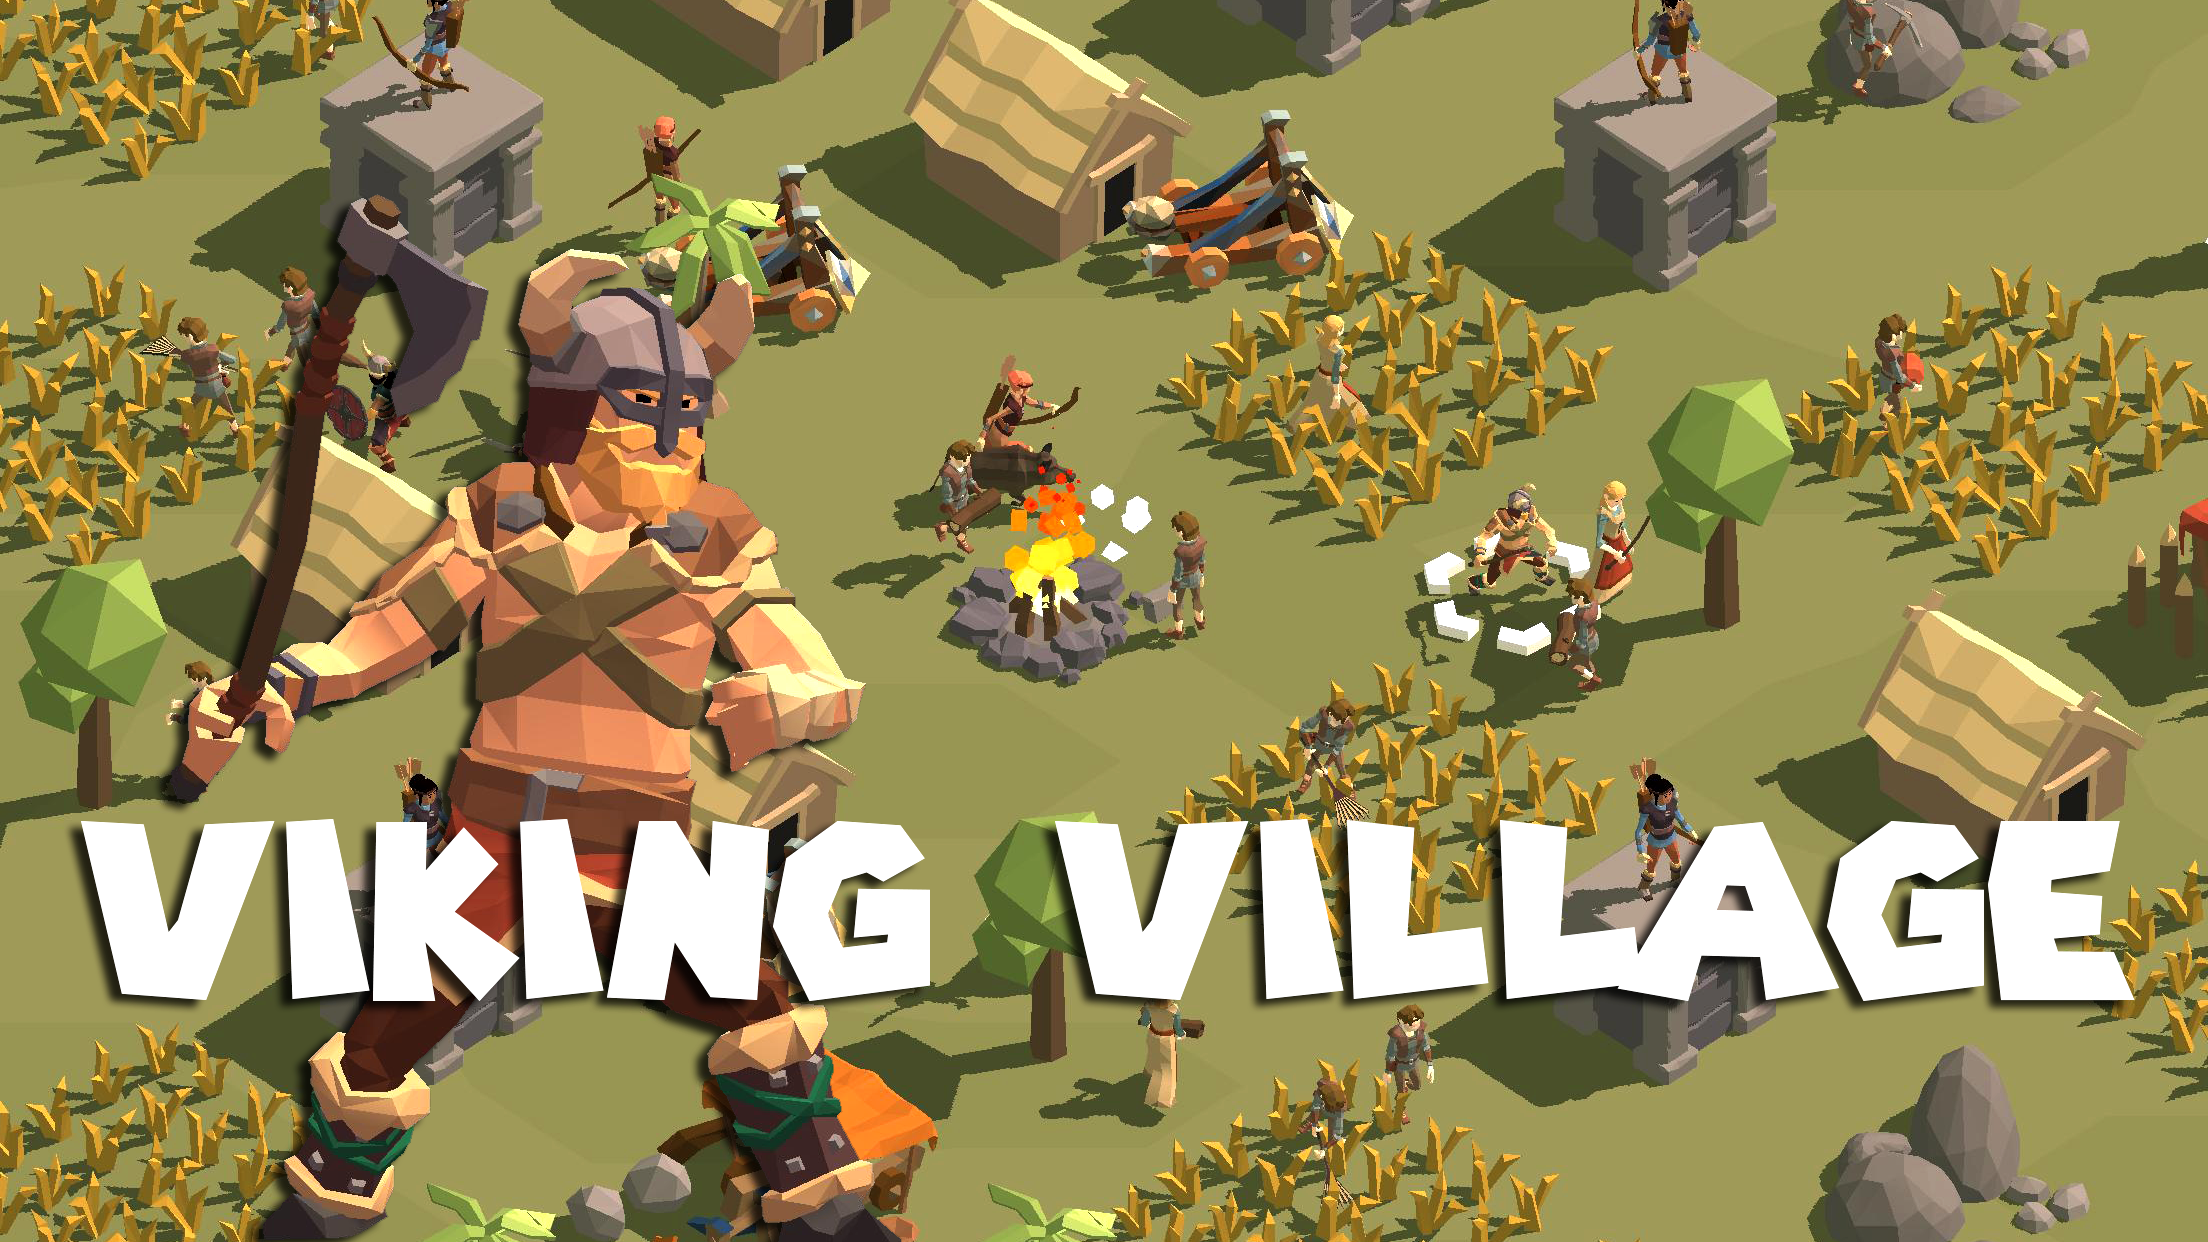 Screenshot 1 of Village viking 8.6.8